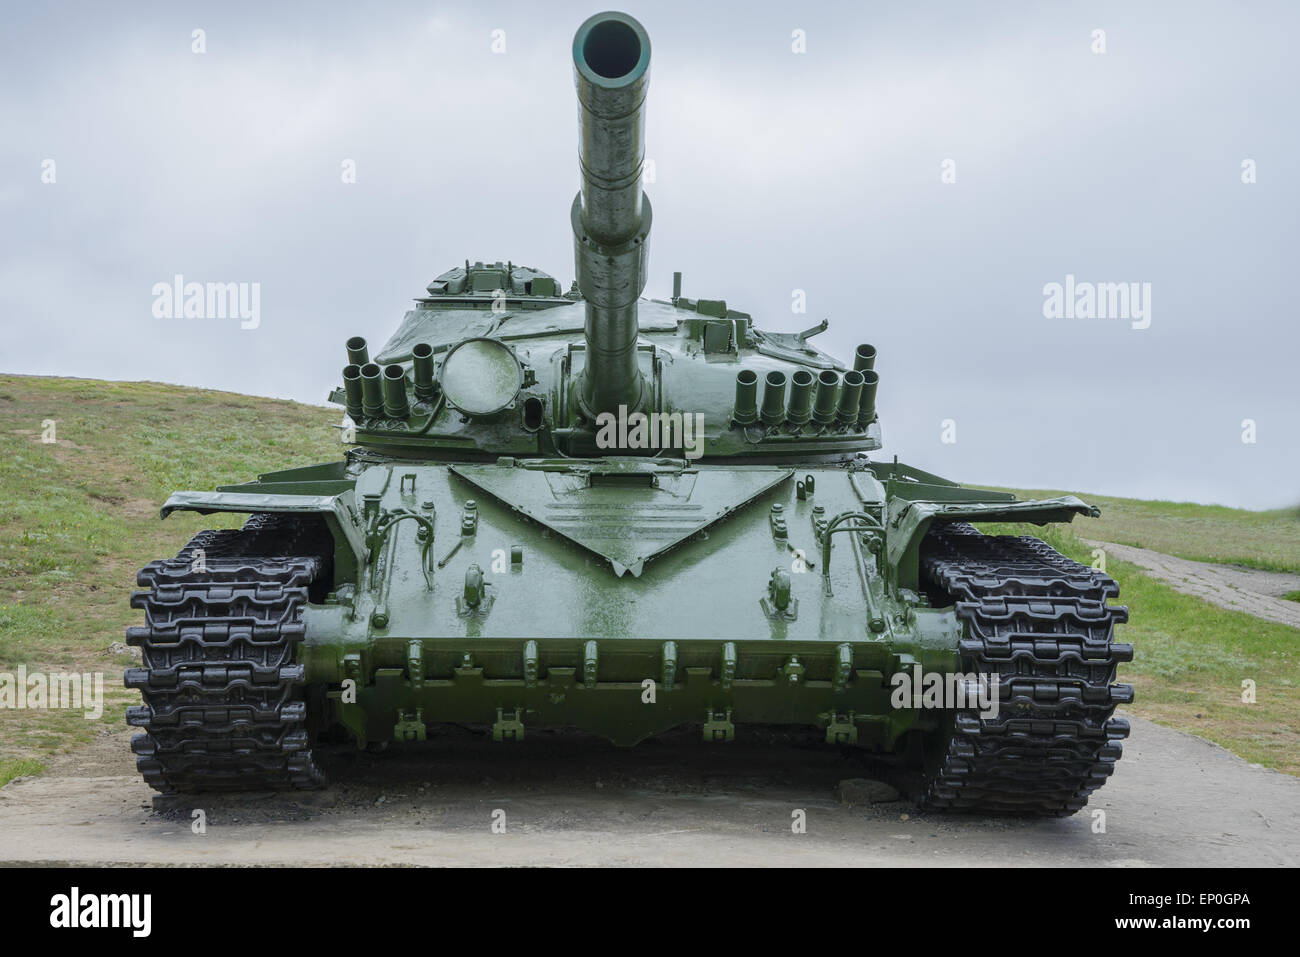 Serbatoio T-72 è nel museo a cielo aperto Foto Stock